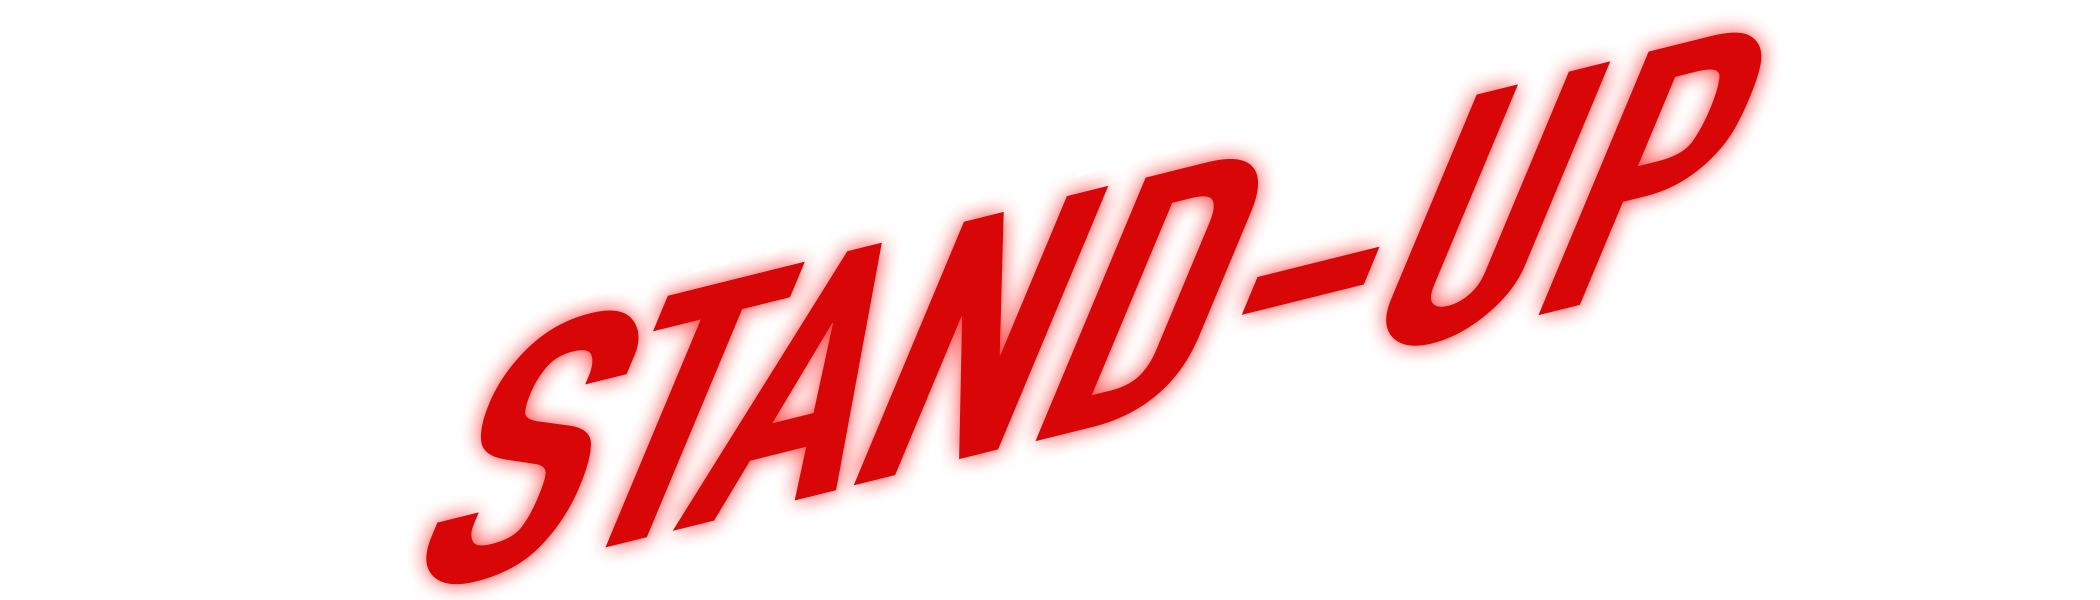 Adam Van Bendler - vanbendler.pl